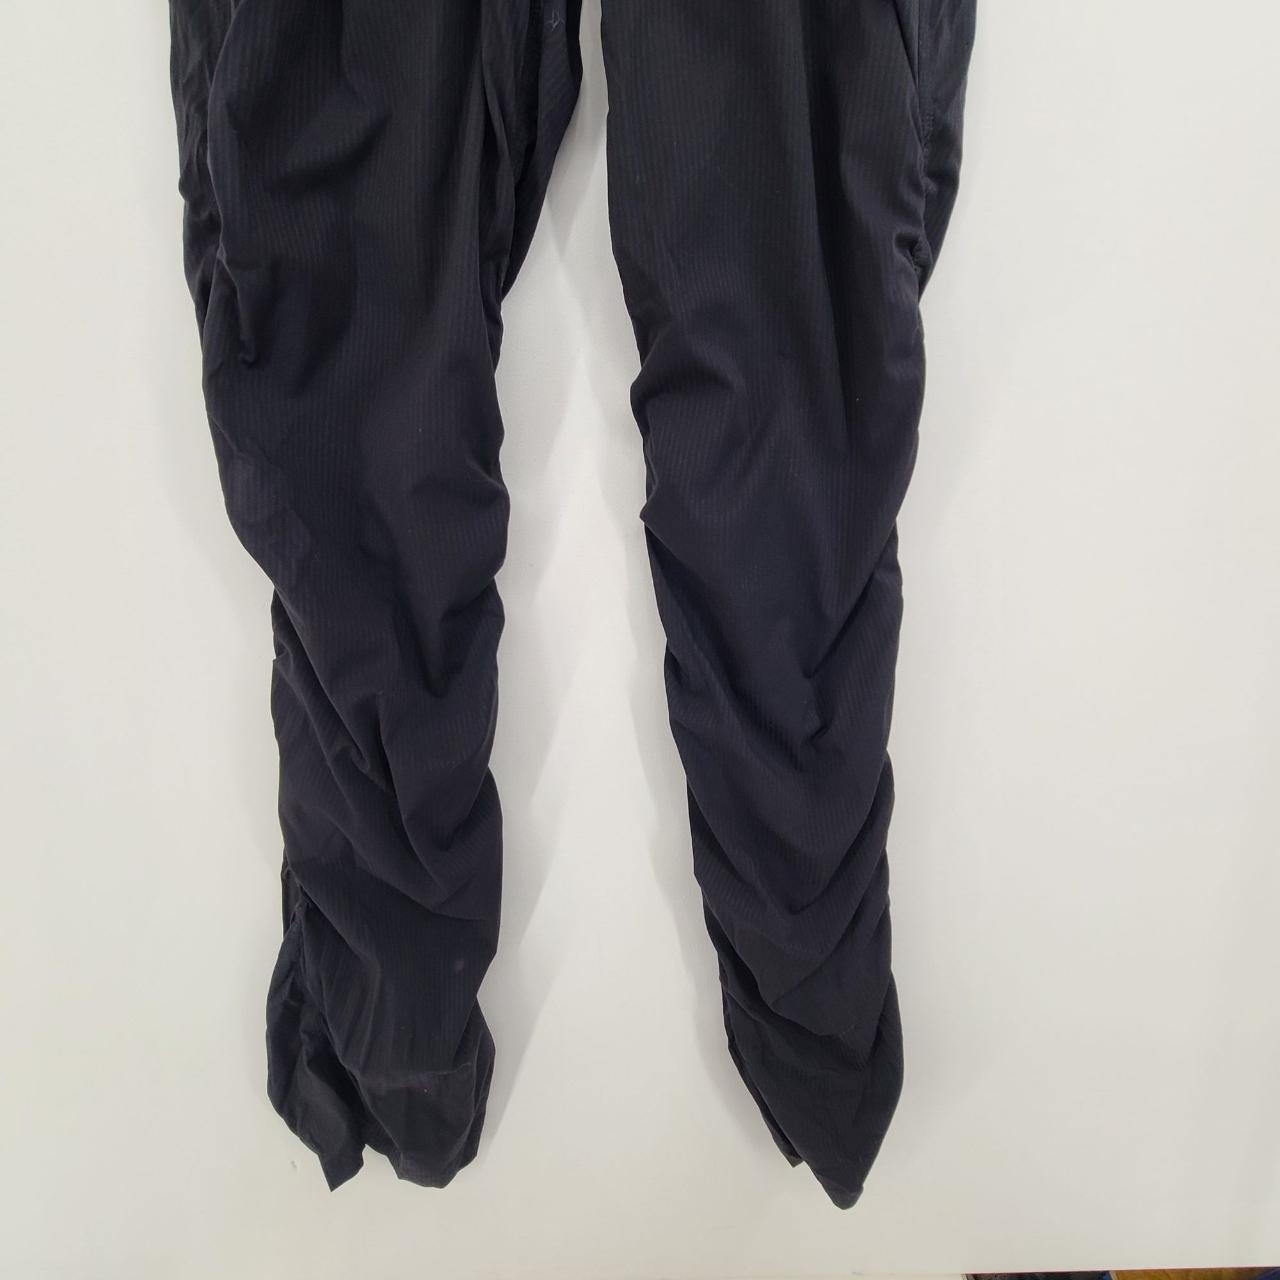 these are black full length leggings from ivivva, - Depop